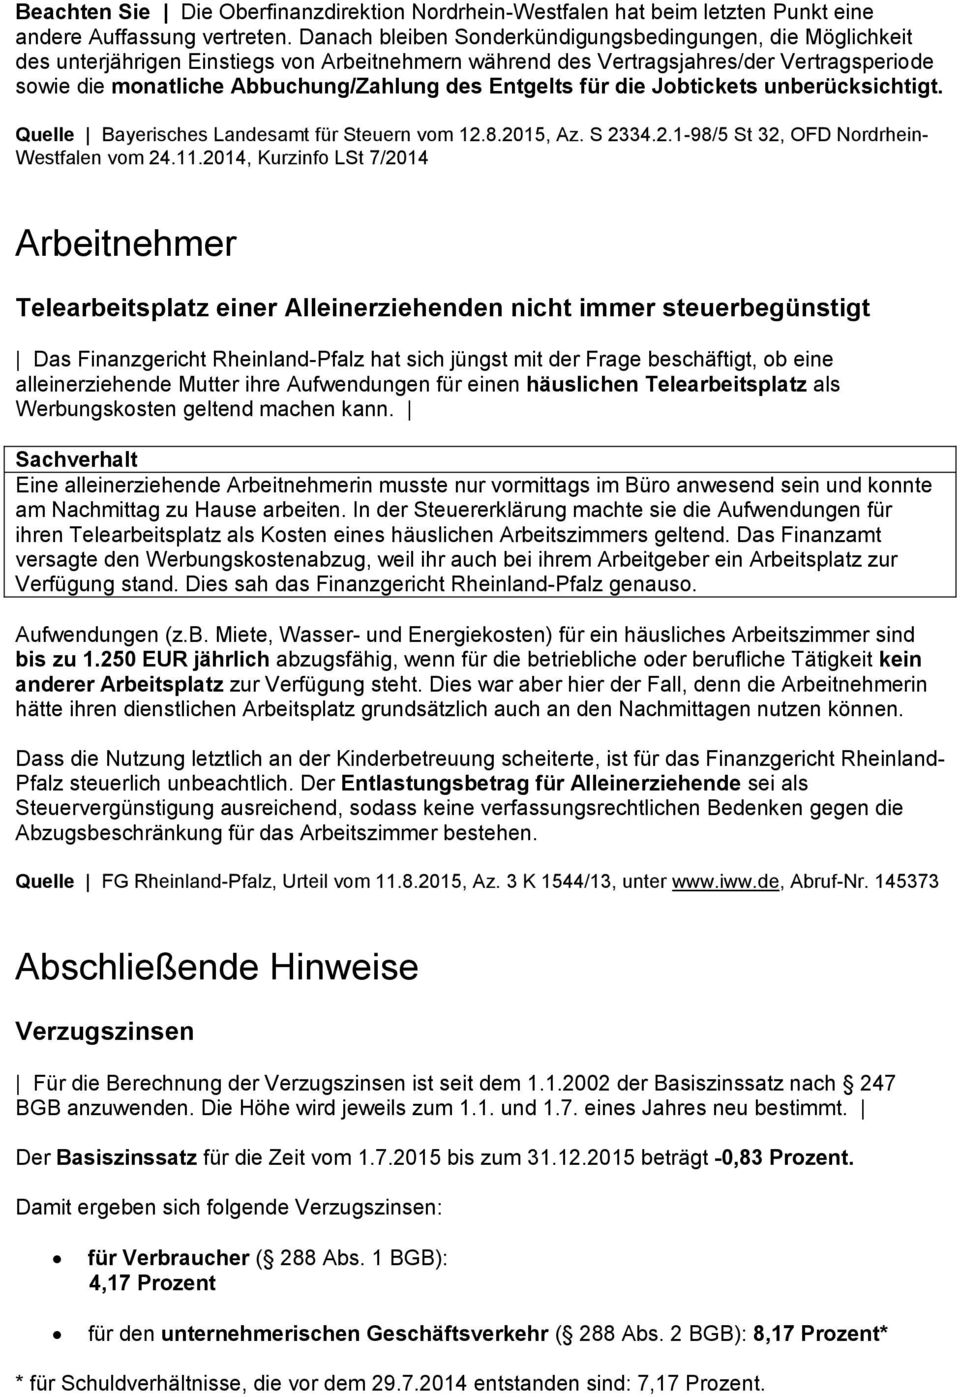 Entgelts für die Jobtickets unberücksichtigt. Quelle Bayerisches Landesamt für Steuern vom 12.8.2015, Az. S 2334.2.1-98/5 St 32, OFD Nordrhein- Westfalen vom 24.11.